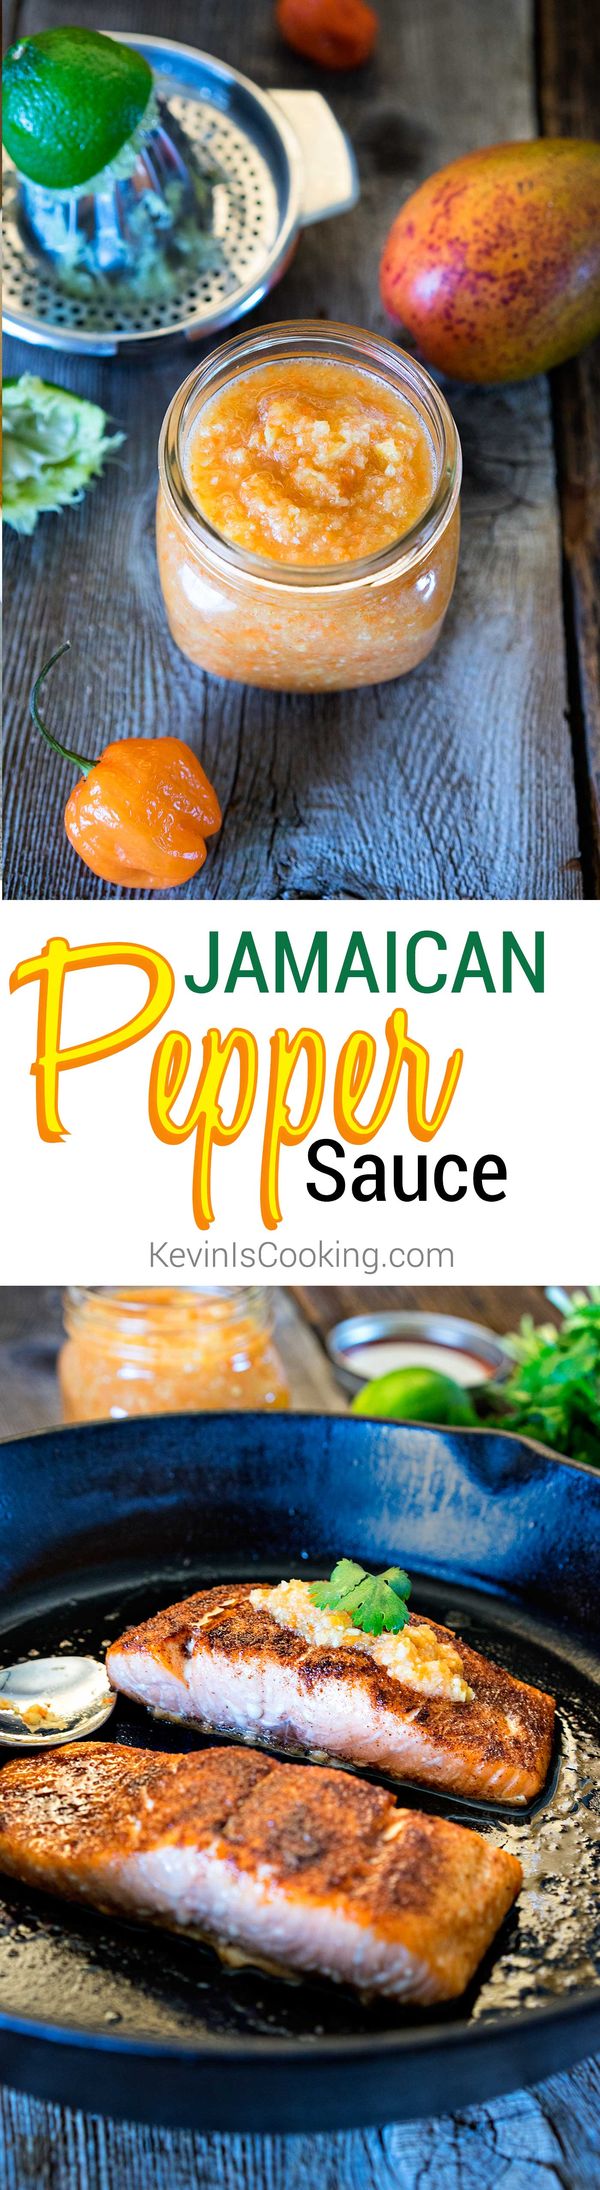 Jamaican Pepper Sauce